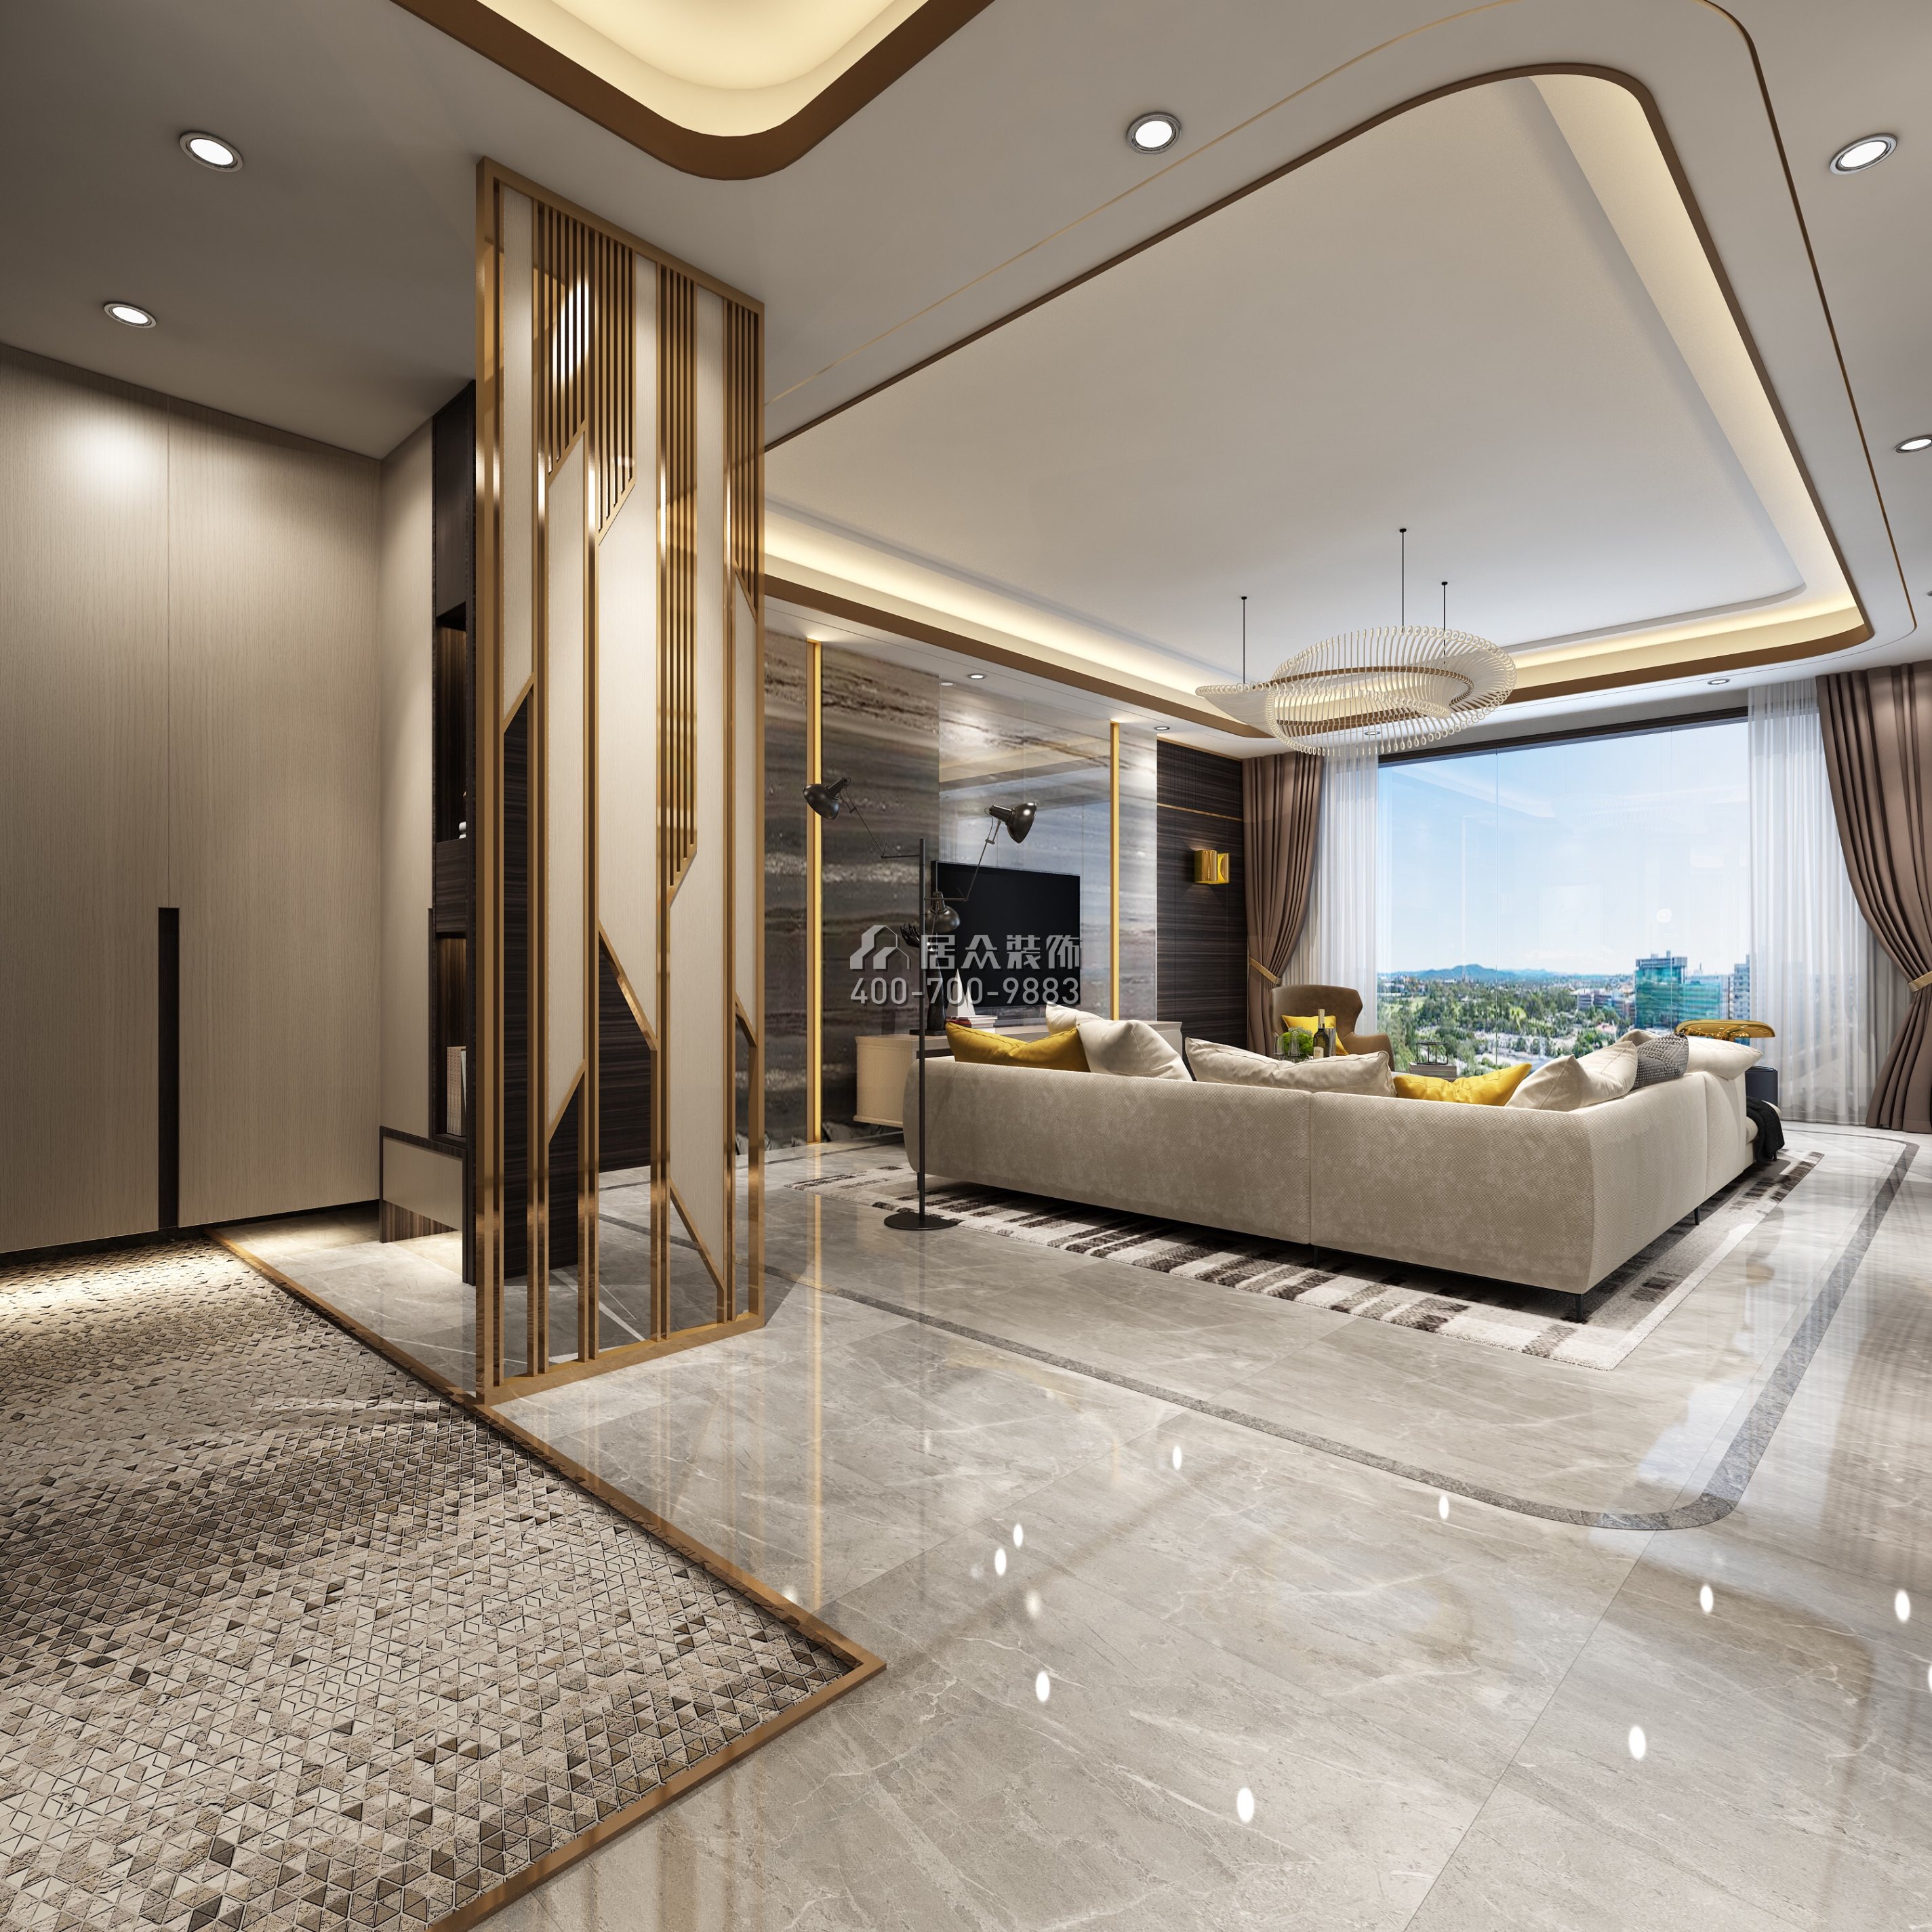 安柏丽晶180平方米现代简约风格平层户型客厅装修效果图